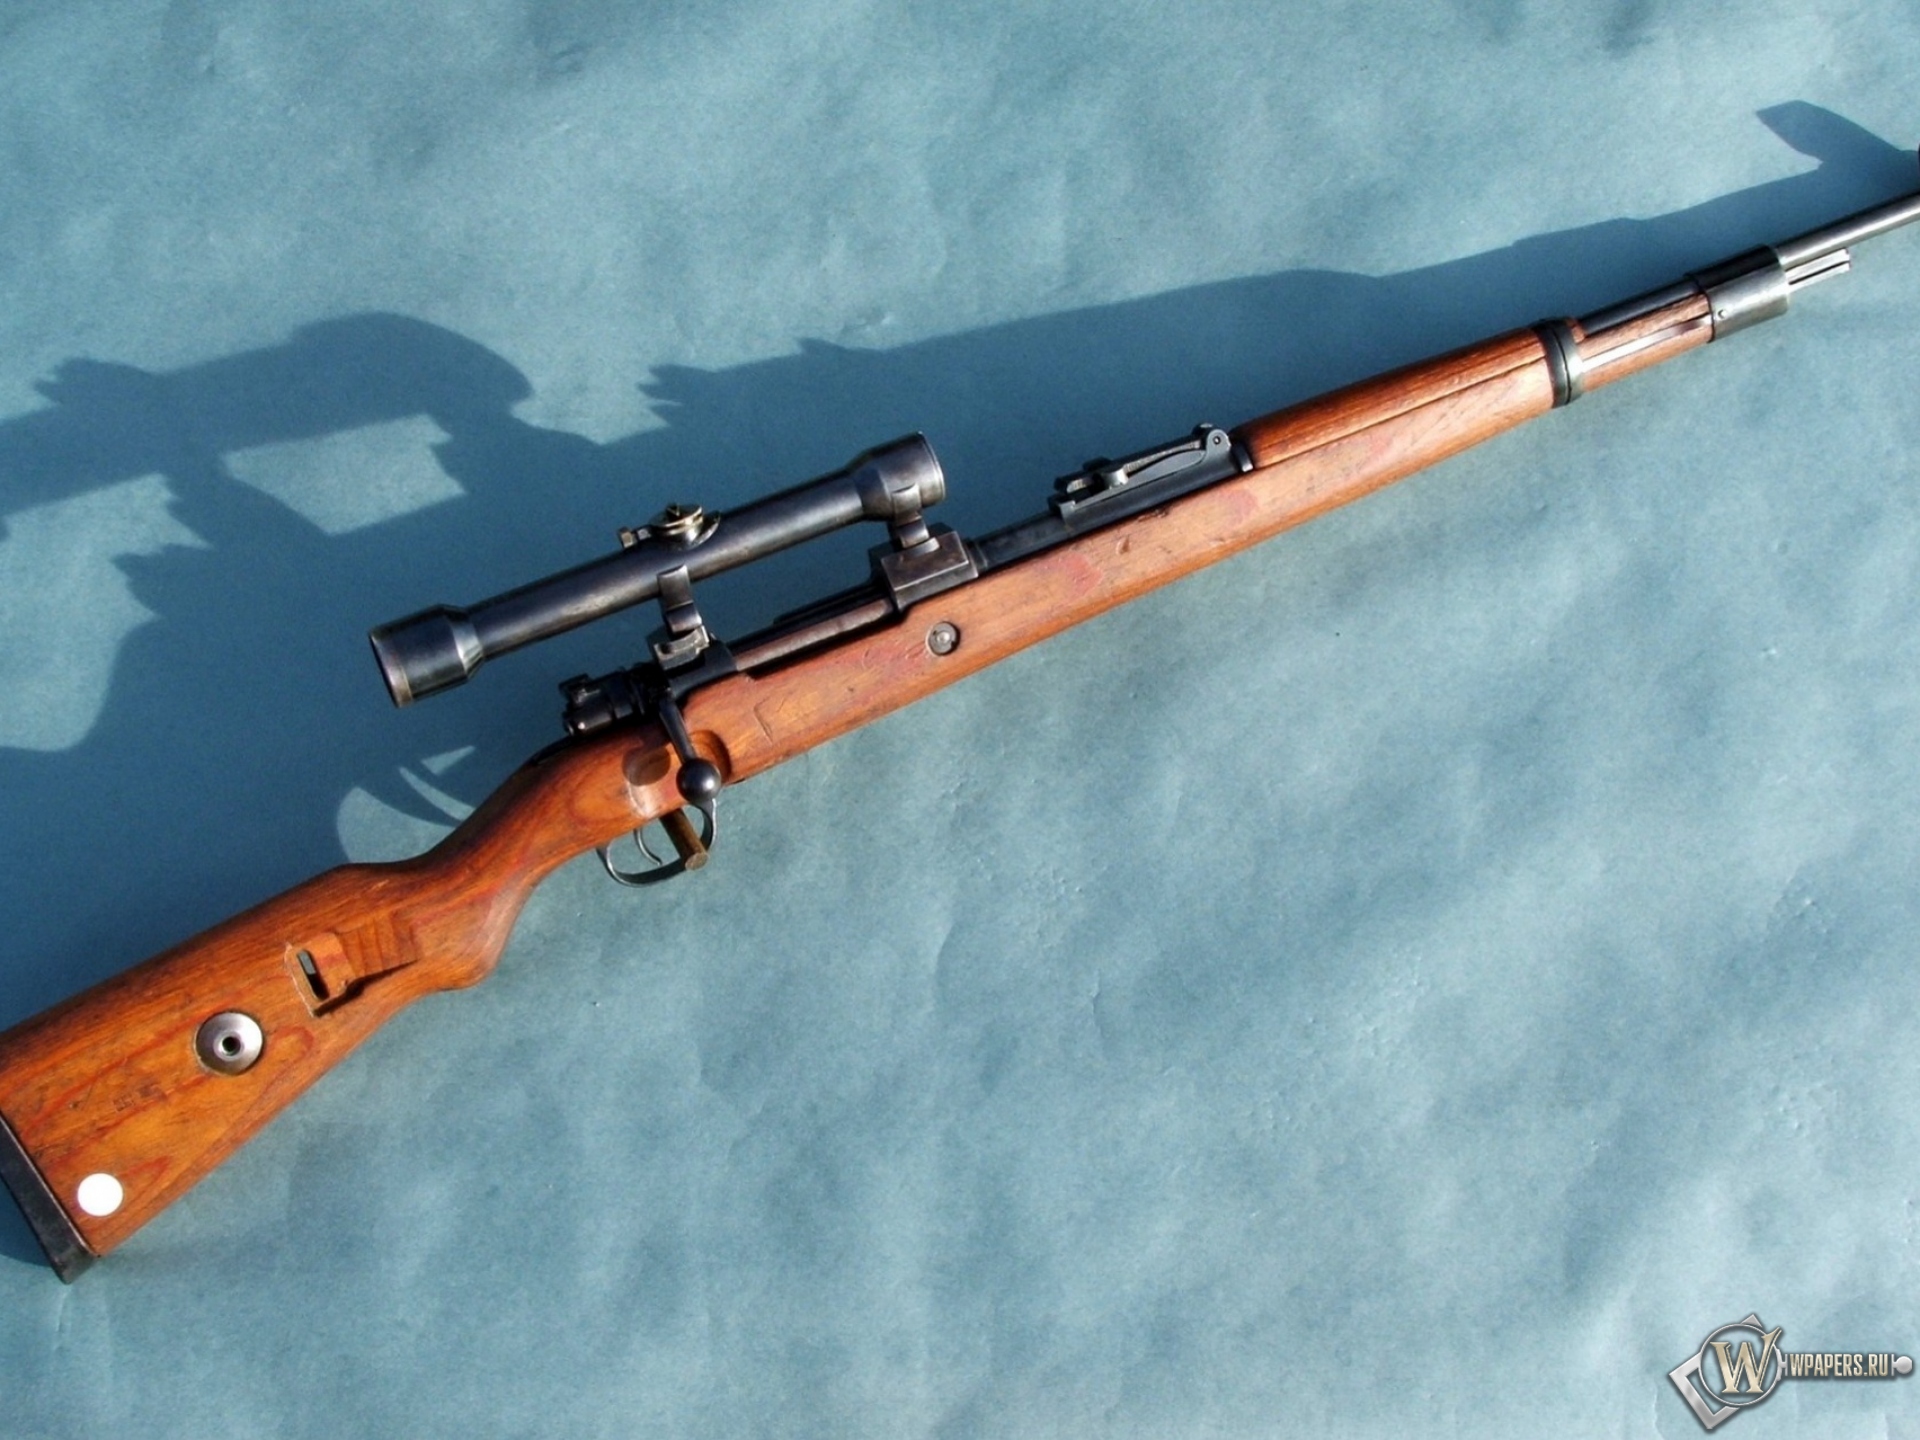 Mauser Gewehr Kar-98 1920x1440